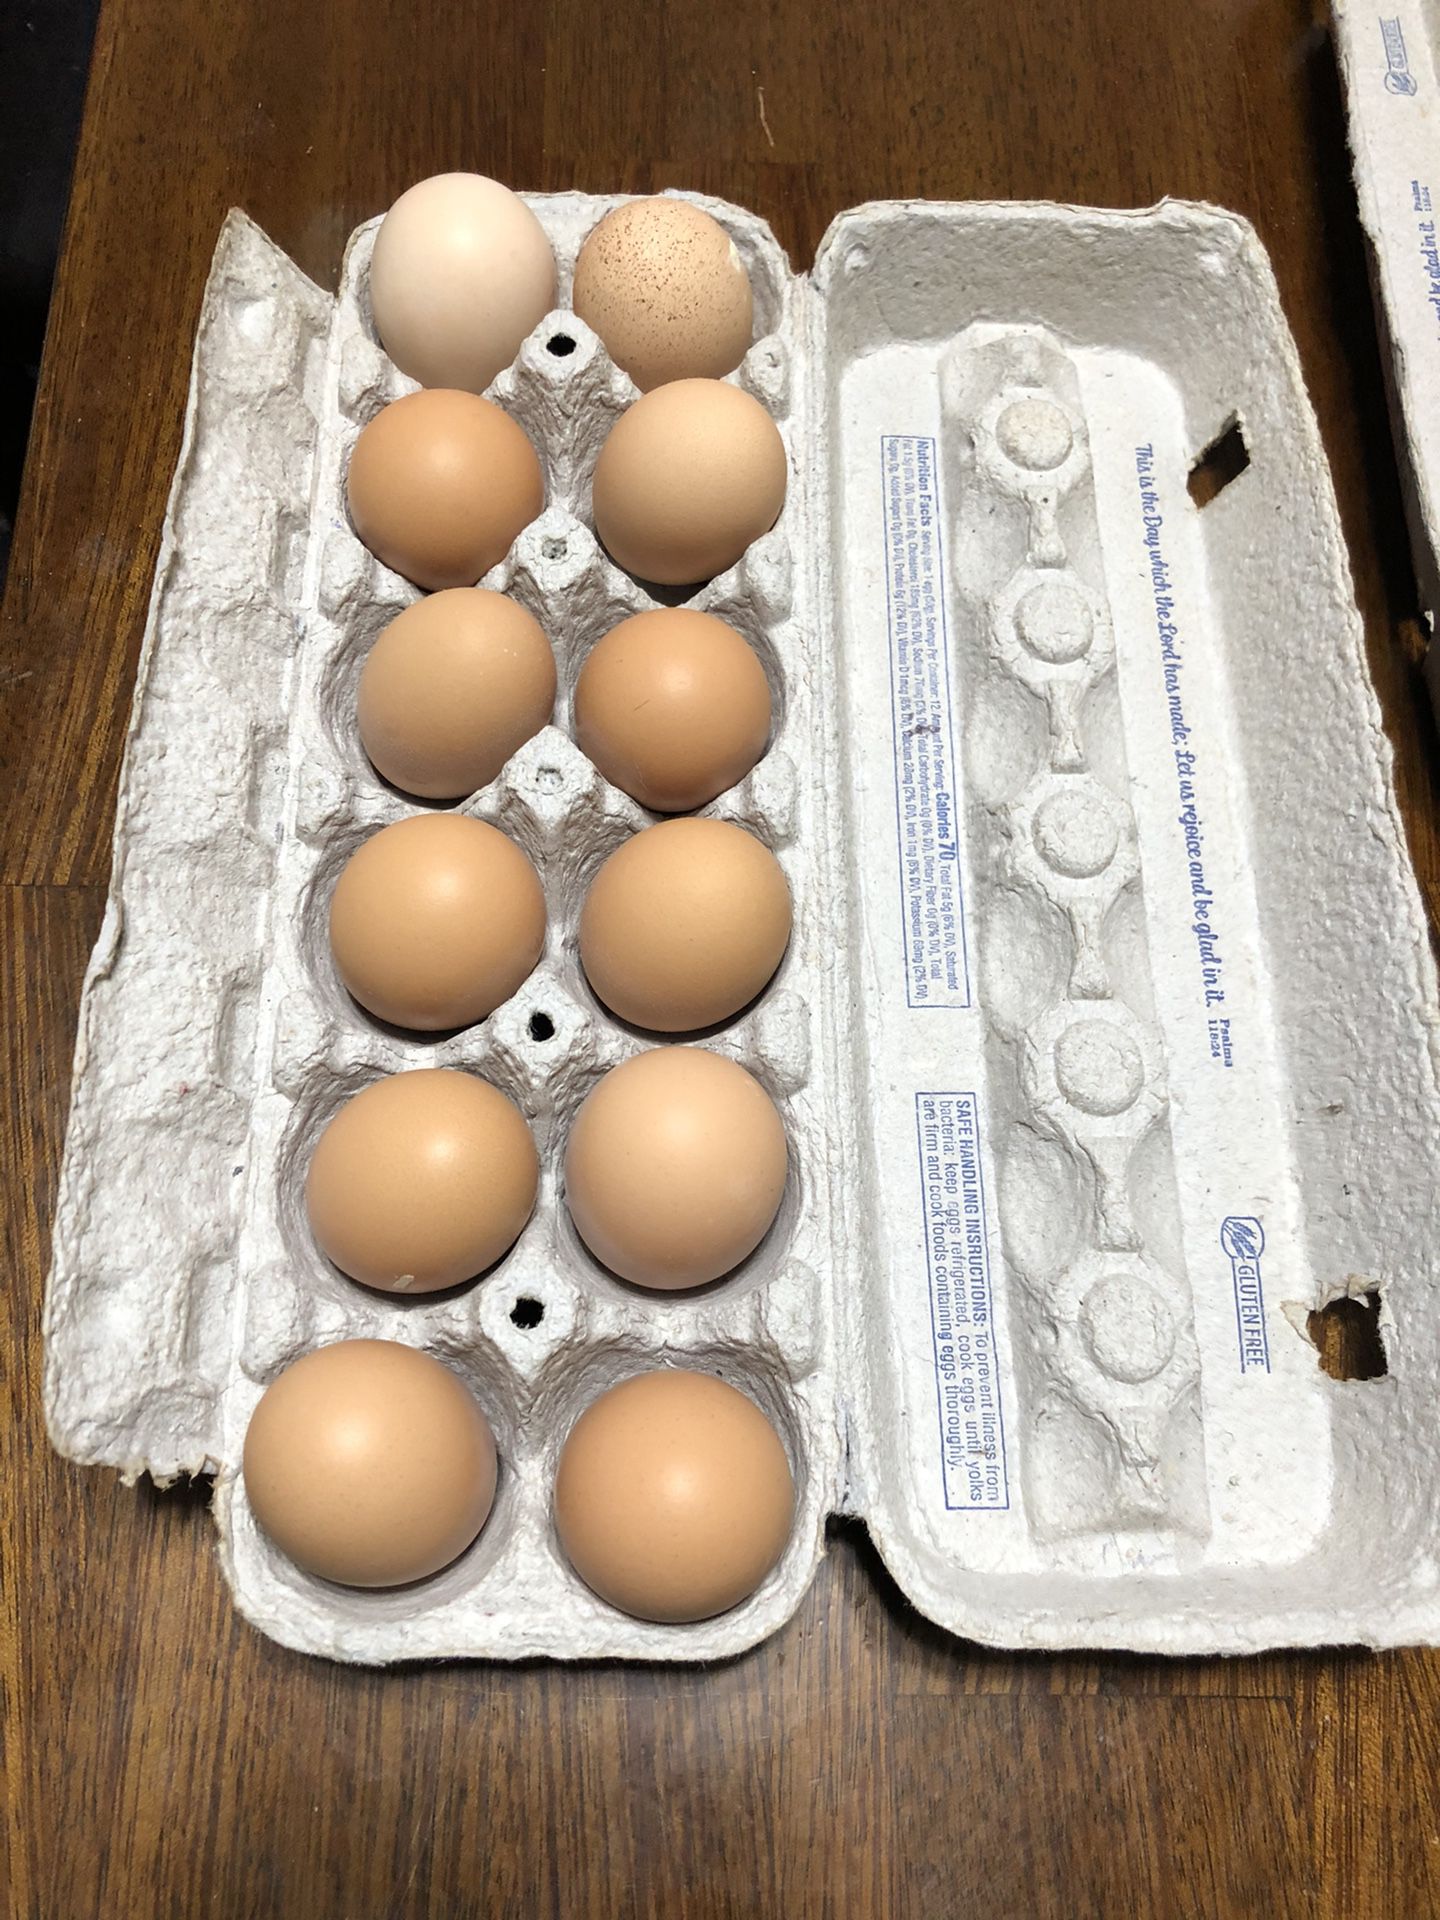 Free Range Farm Fresh Eggs 